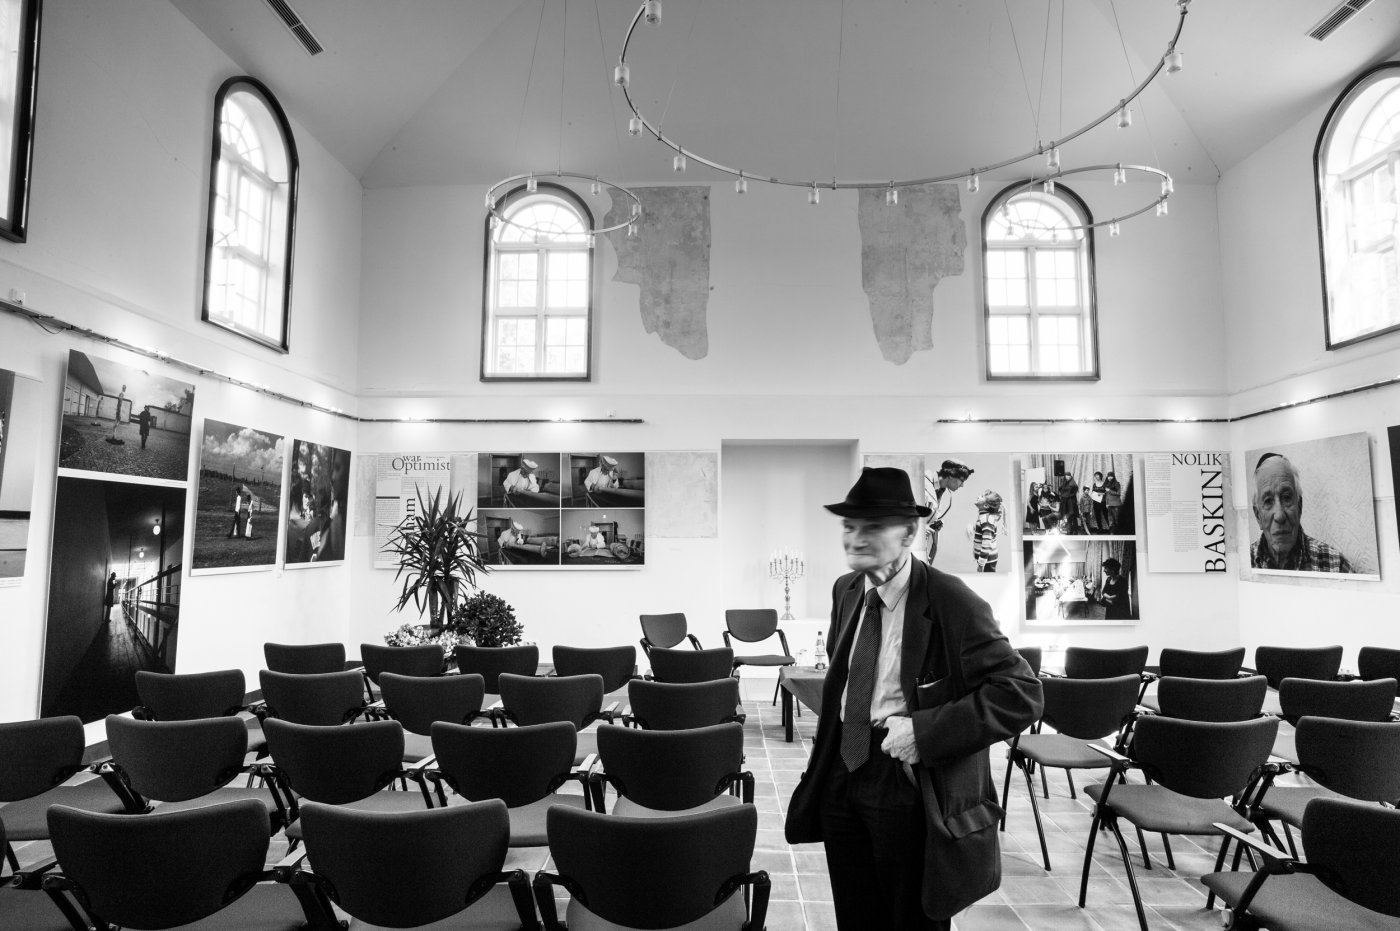 Abraham Ausstellung Hagenow Alte Synagoge 2